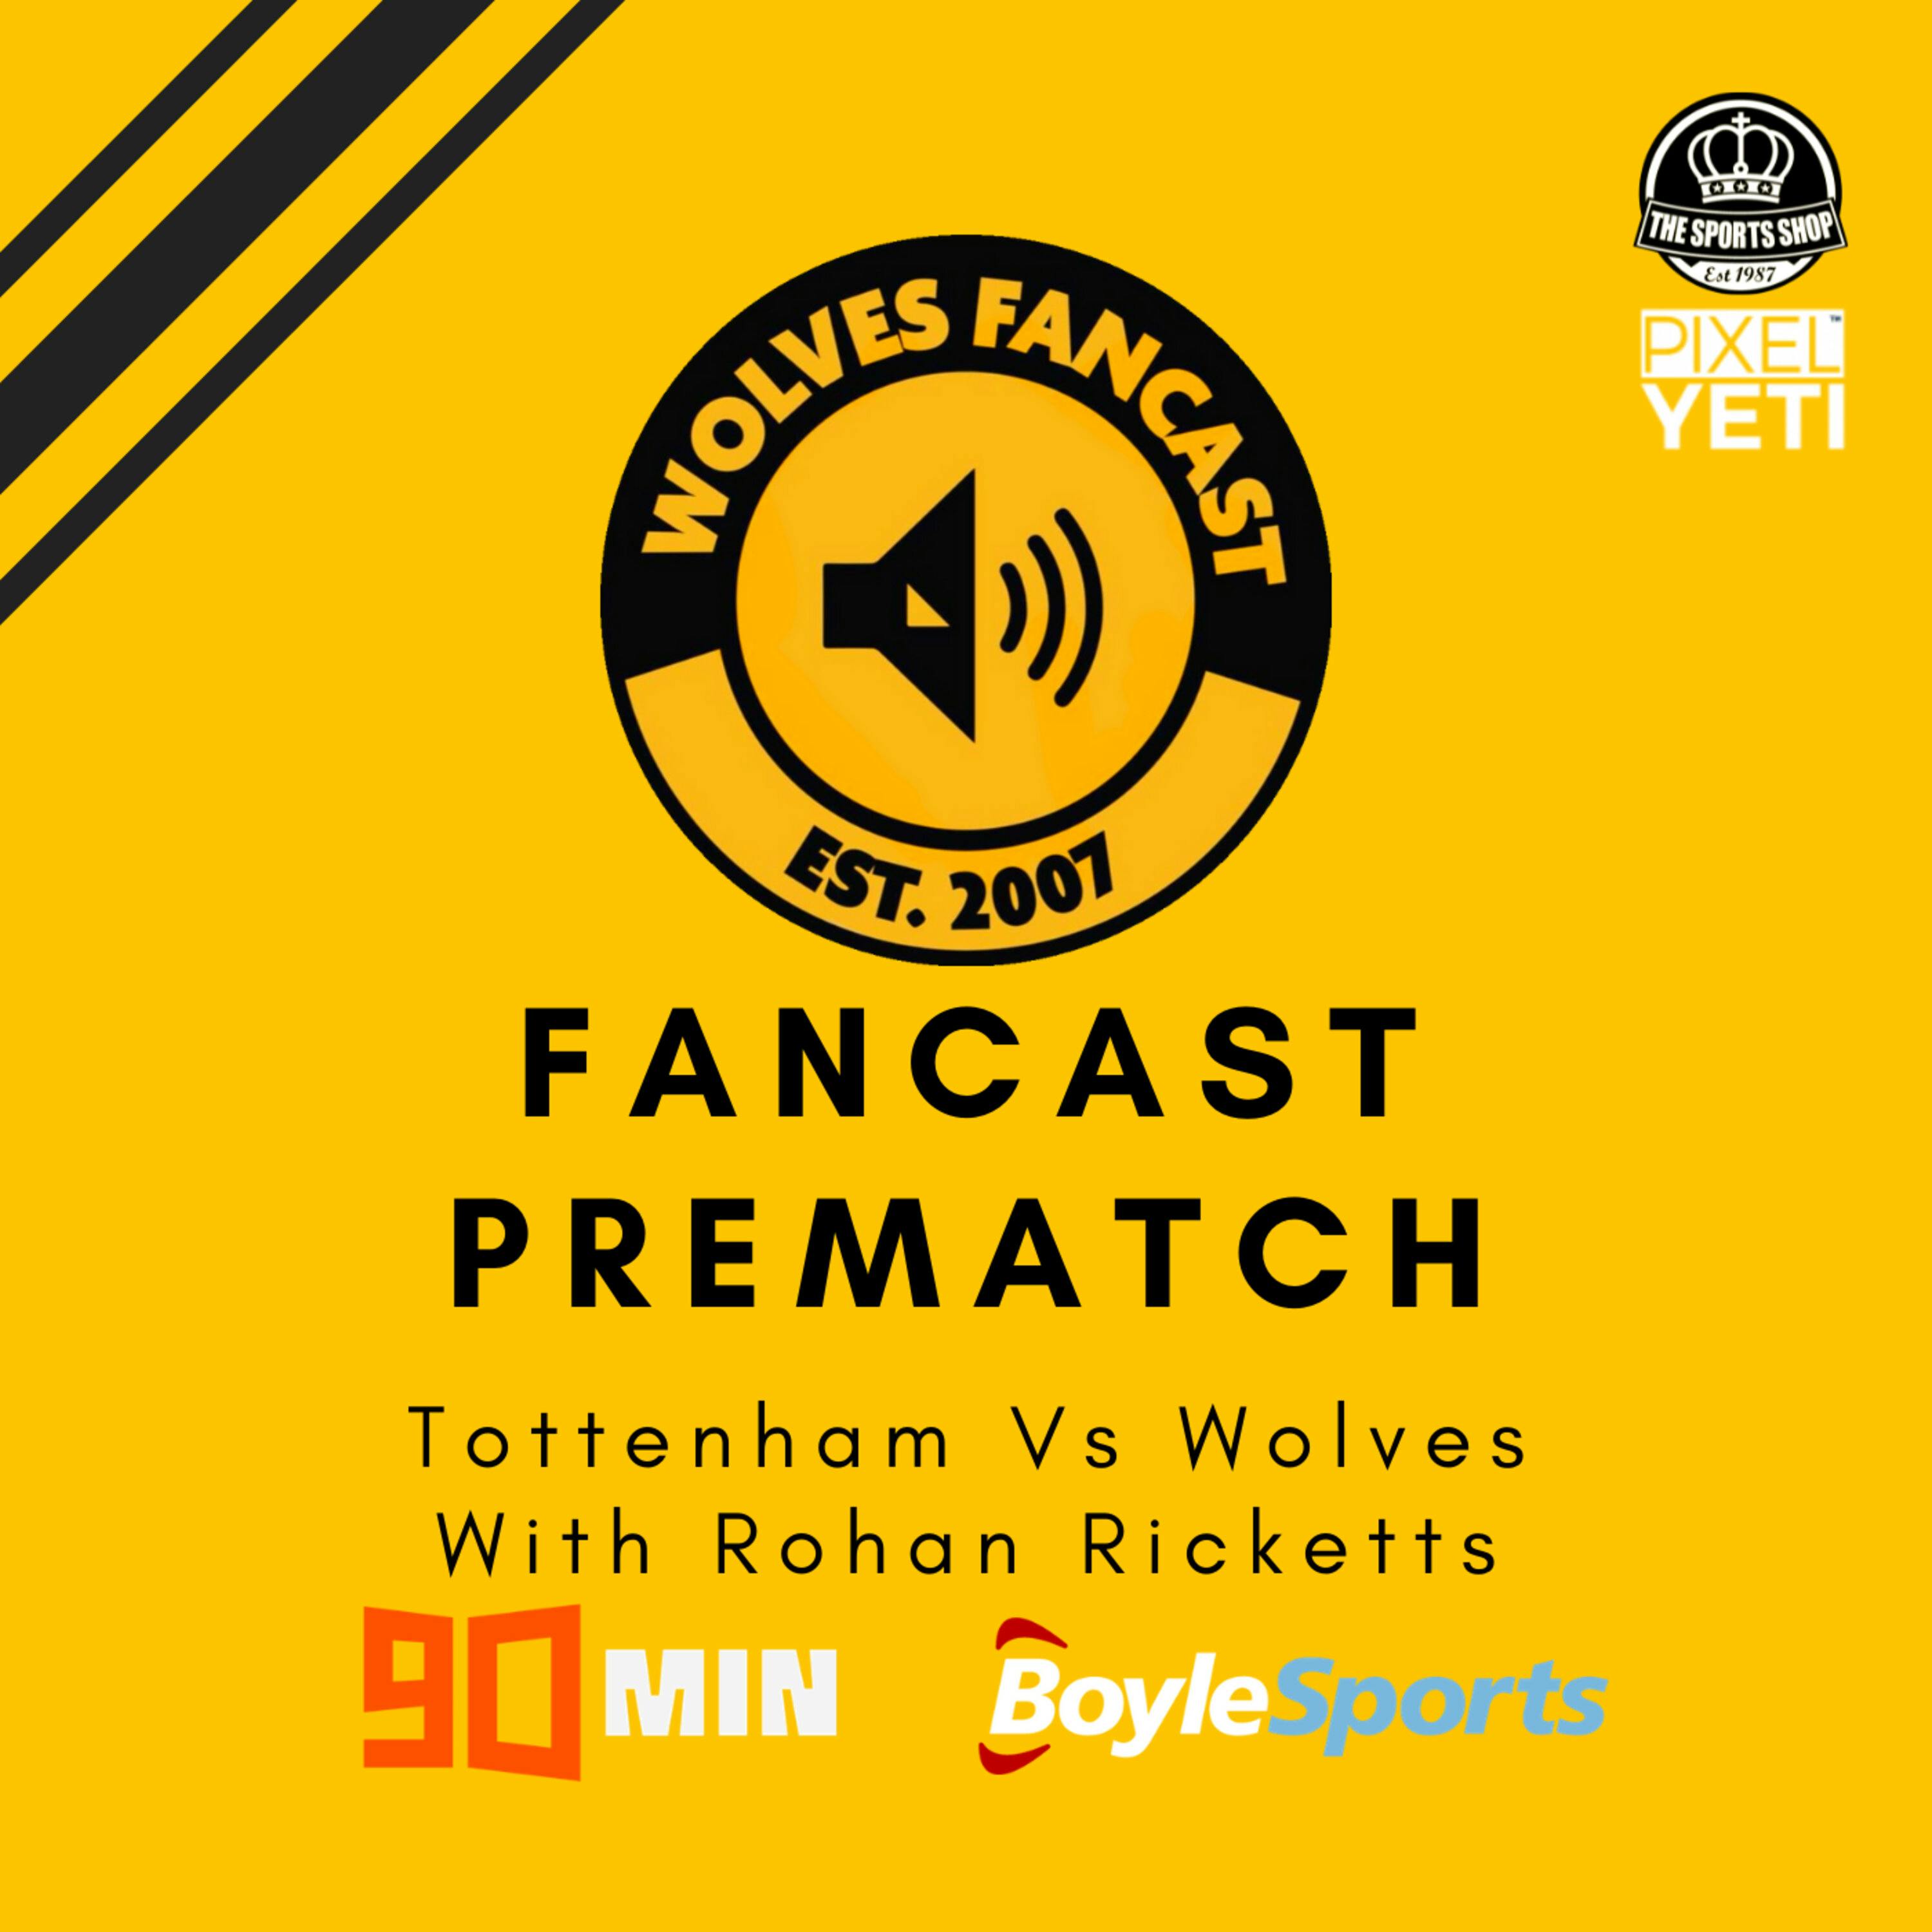 Spurs vs Wolves - Fancast Prematch W/ Rohan Ricketts